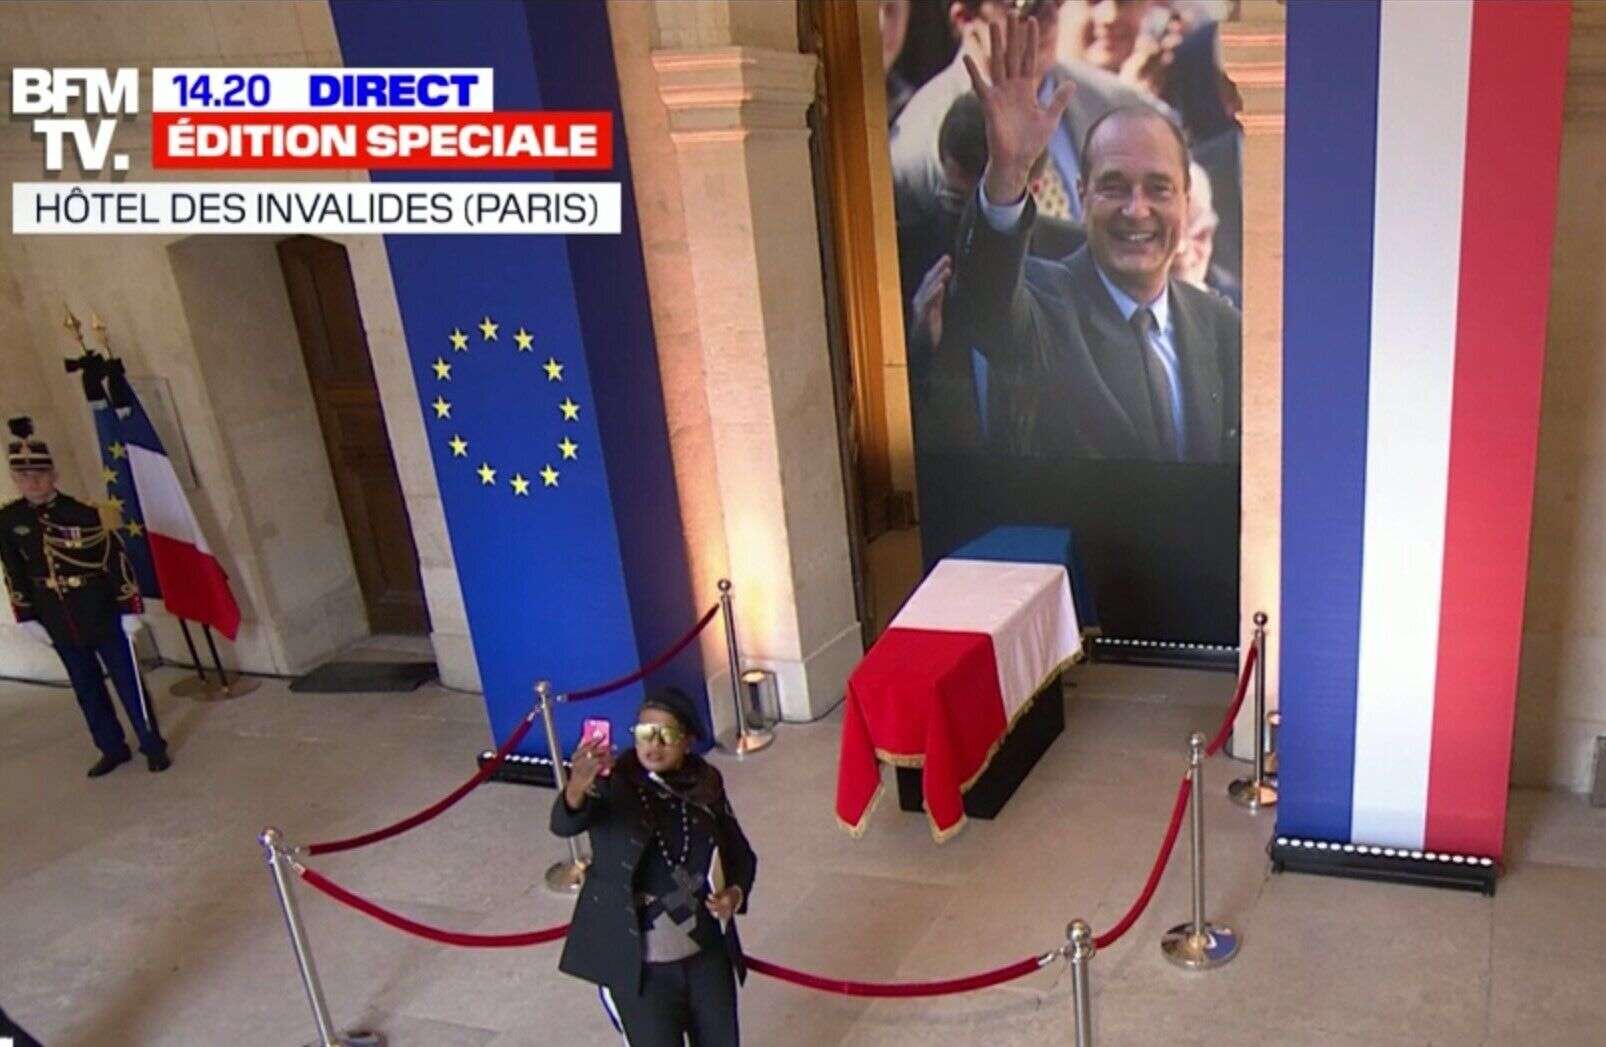 Des selfies indélicats ont été repérés par des internautes indignés lors de l'hommage populaire rendu à Jacques Chirac.